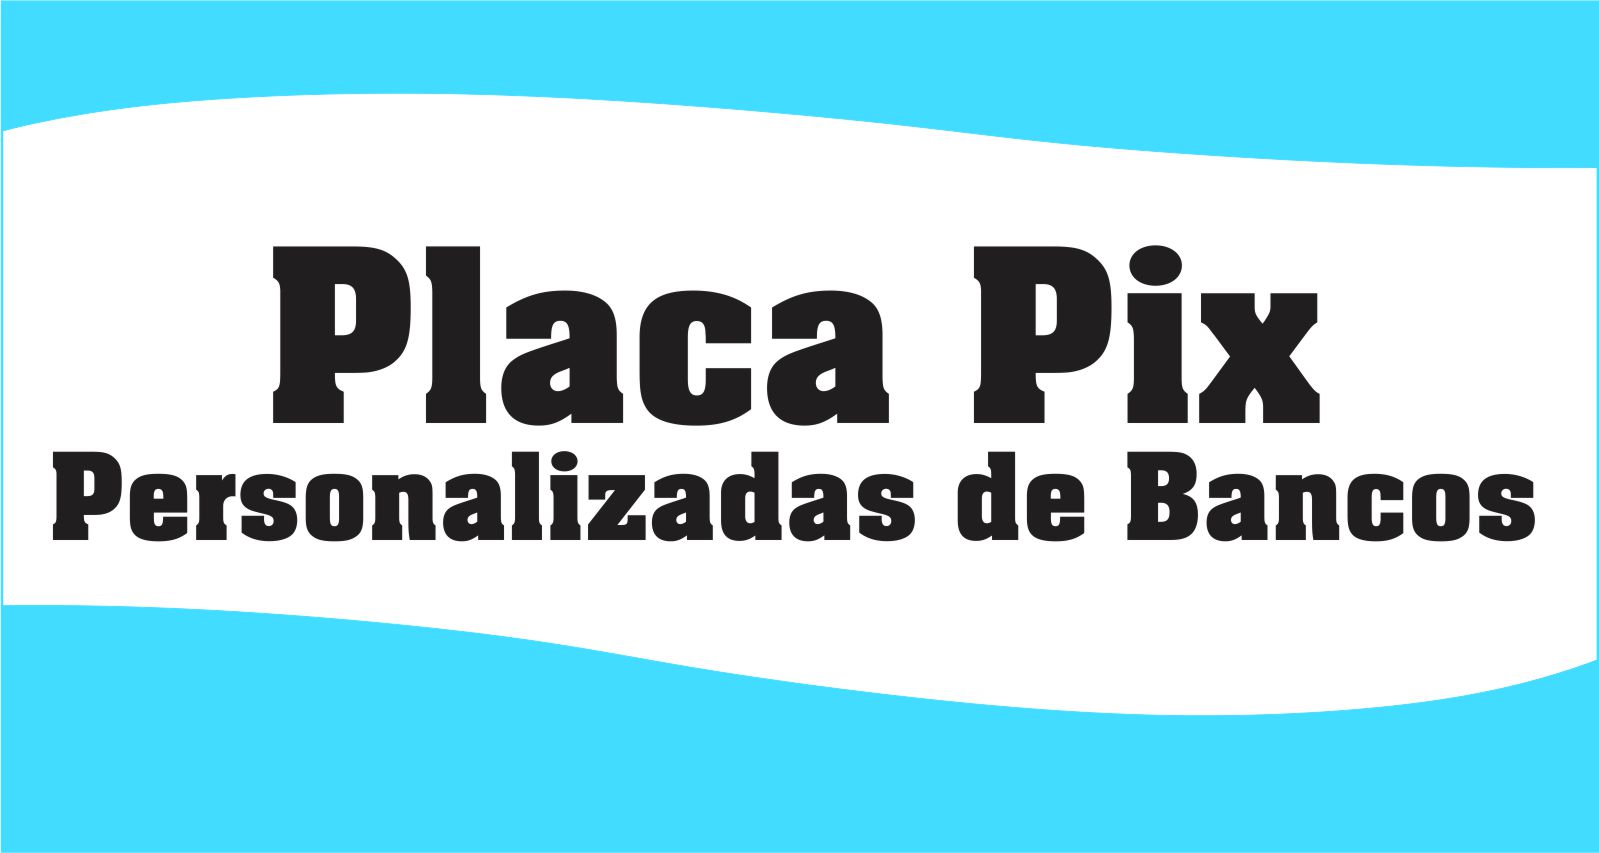 CAPA PLACA PIX PERSONALIZADA DE BANCOS - Placa Pix Personalizada de Bancos Para Imprimir